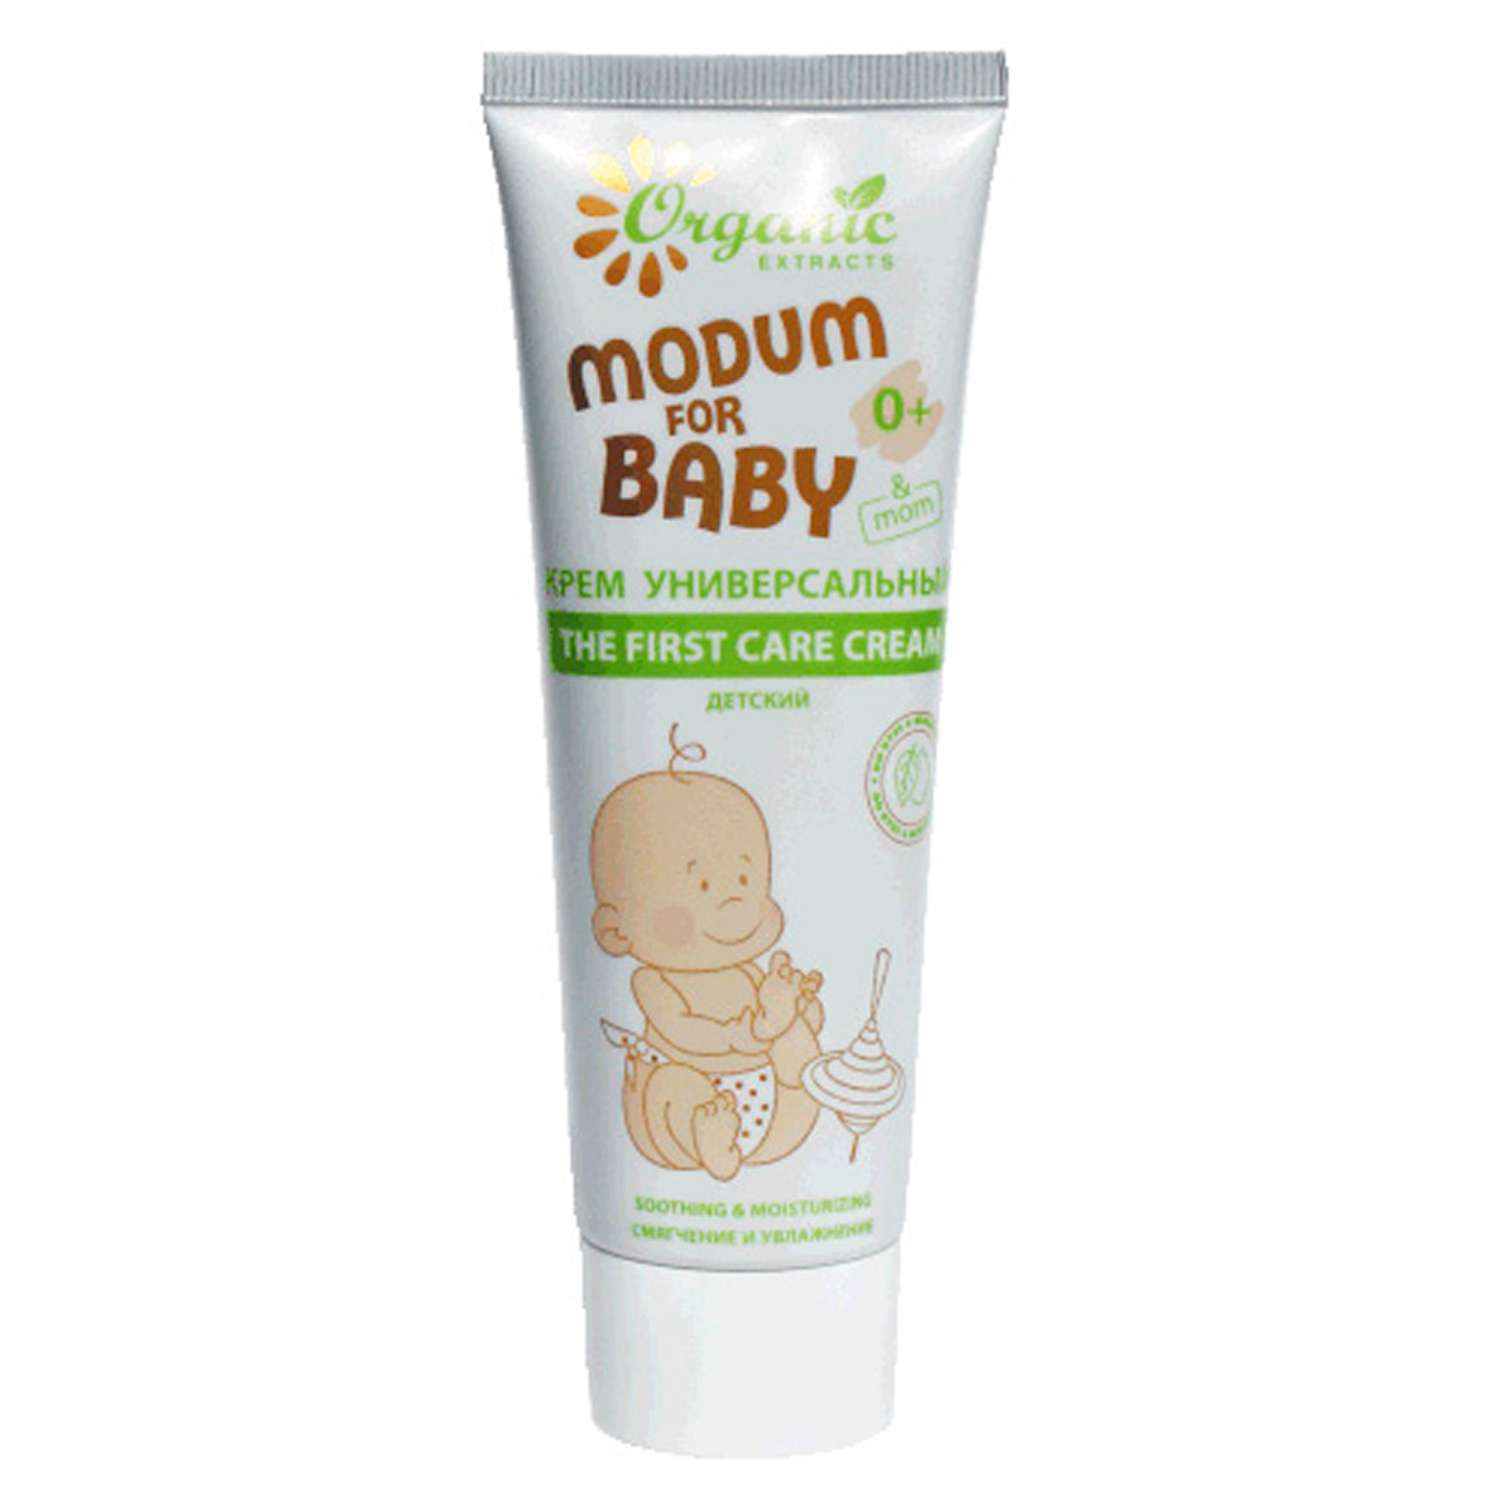 Крем MODUM for baby универсальный детский 0+ 75 мл - фото 1